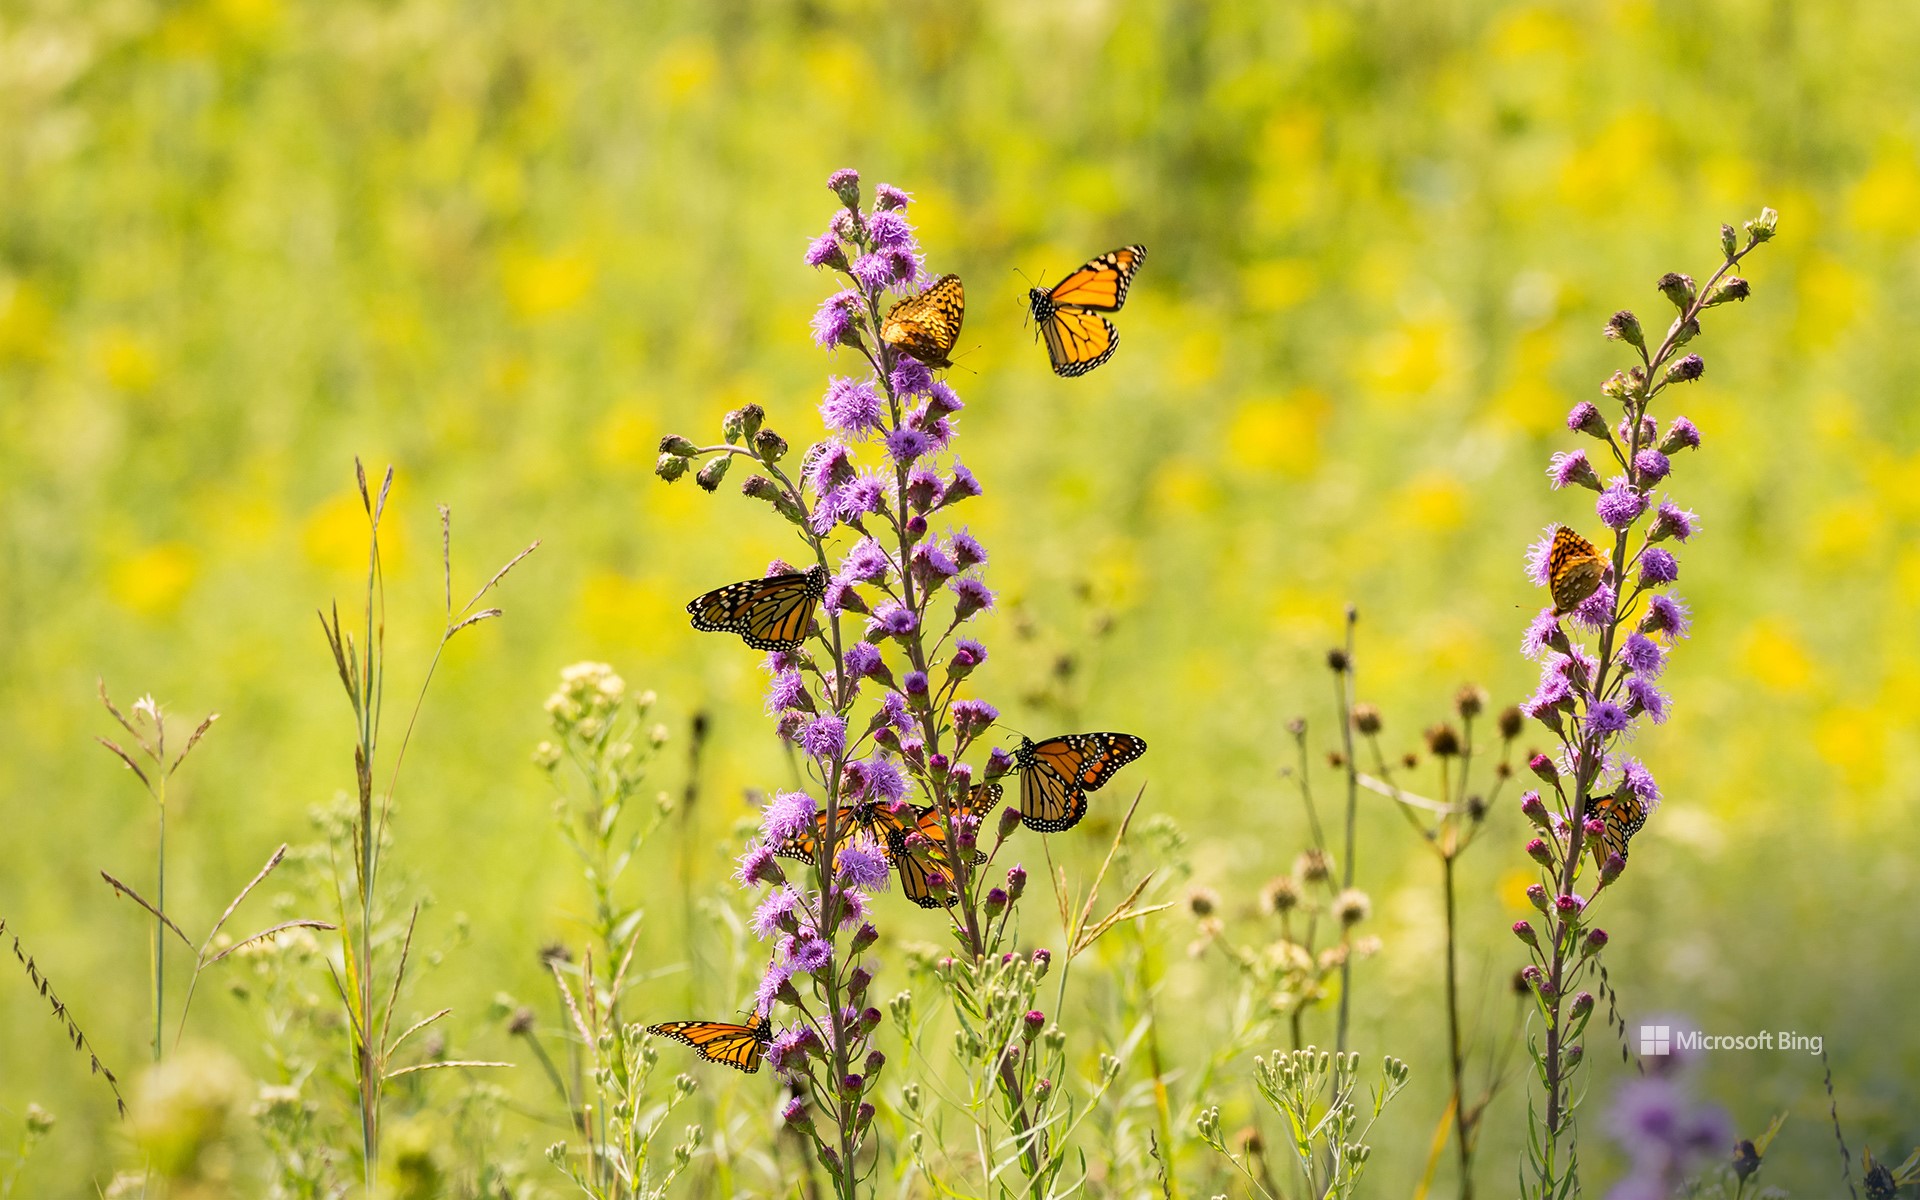 Monarch butterflies feeding from wildflowers